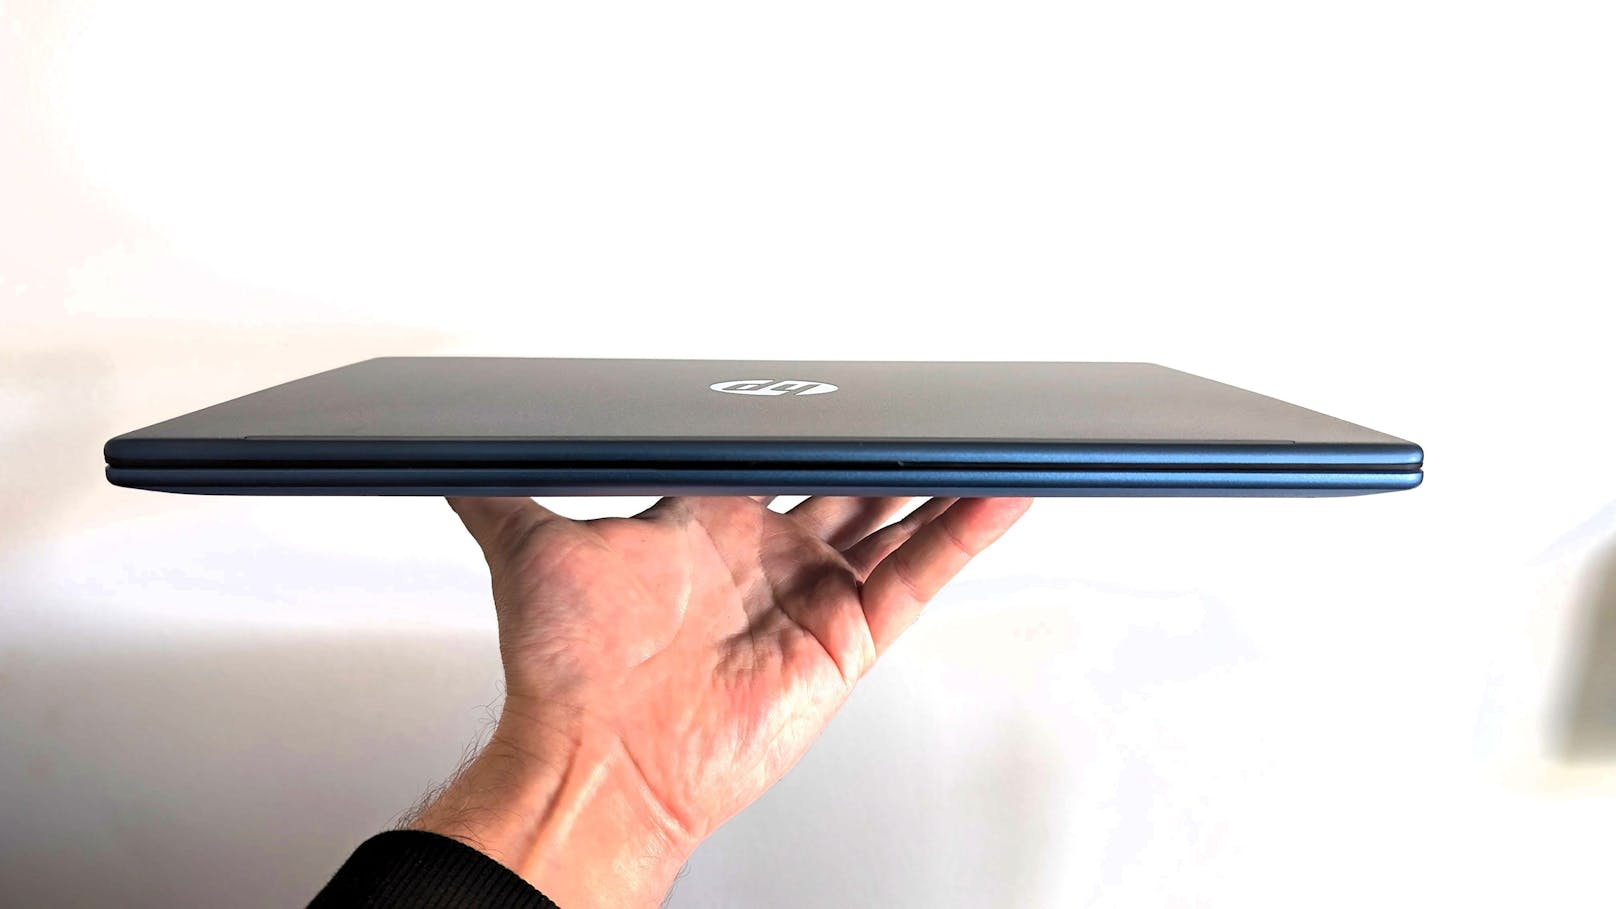 Auffällig ist gleich zu Beginn das geringe Gewicht (1,4 Kilogramm) und die mattblaue Farbe des Laptops.